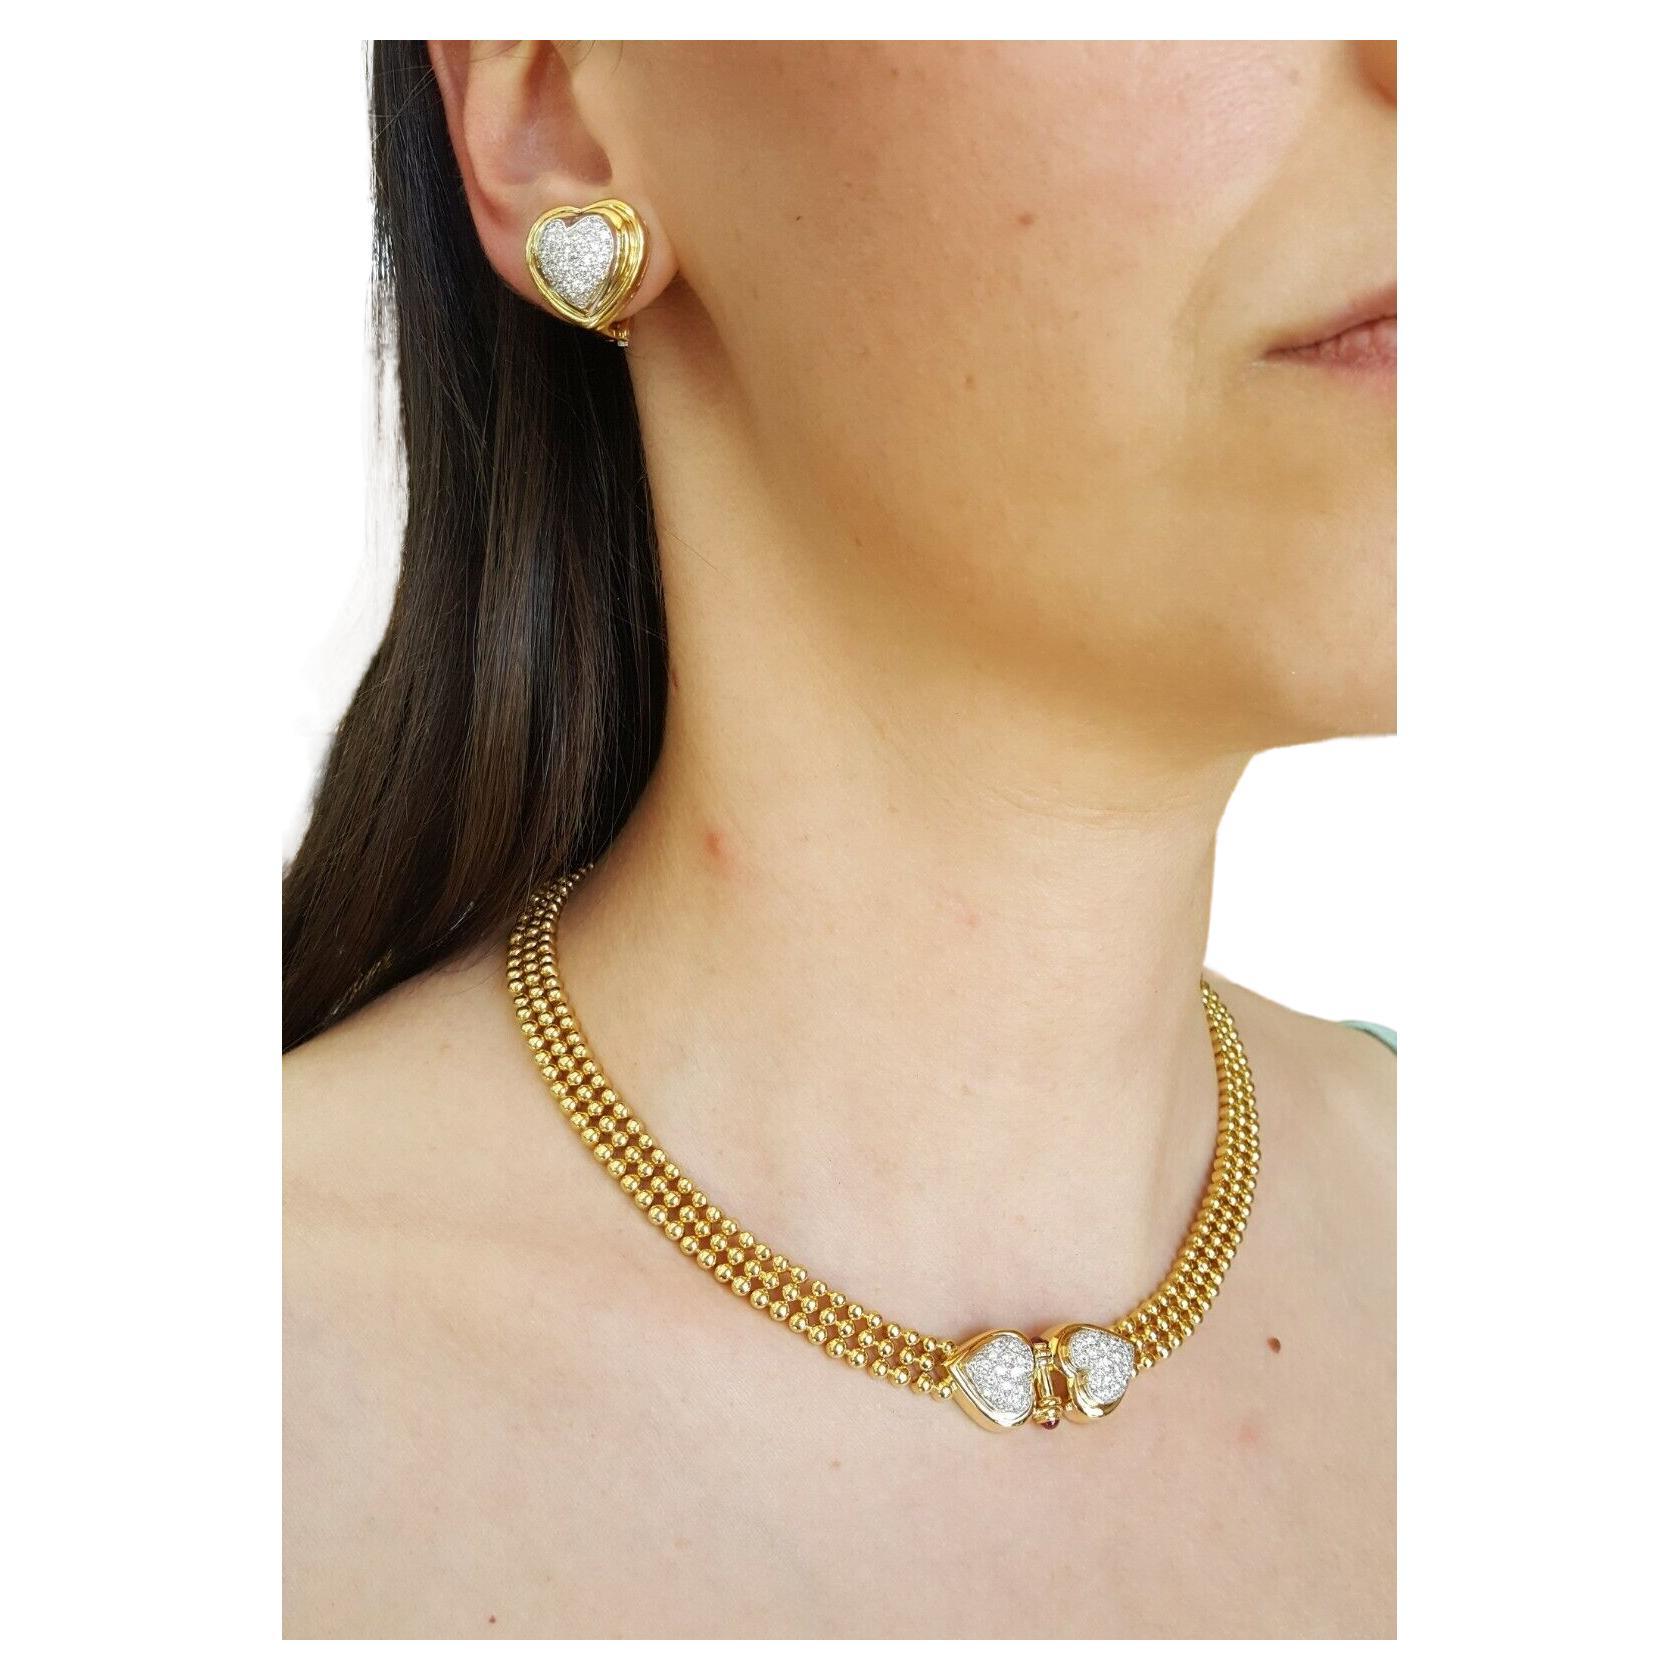 Eine exquisite Halskette, entworfen von H.Stern

mit einem Gesamtgewicht von 2,28 Karat  18K Gelbgold Runde Brillantschliff Diamant Doppelherz Halskette & Ohr-Clip Ohrringe Set. 

Die Ohrringe wiegen 14,7 Gramm und die Halskette 64,7 Gramm.
Das Set